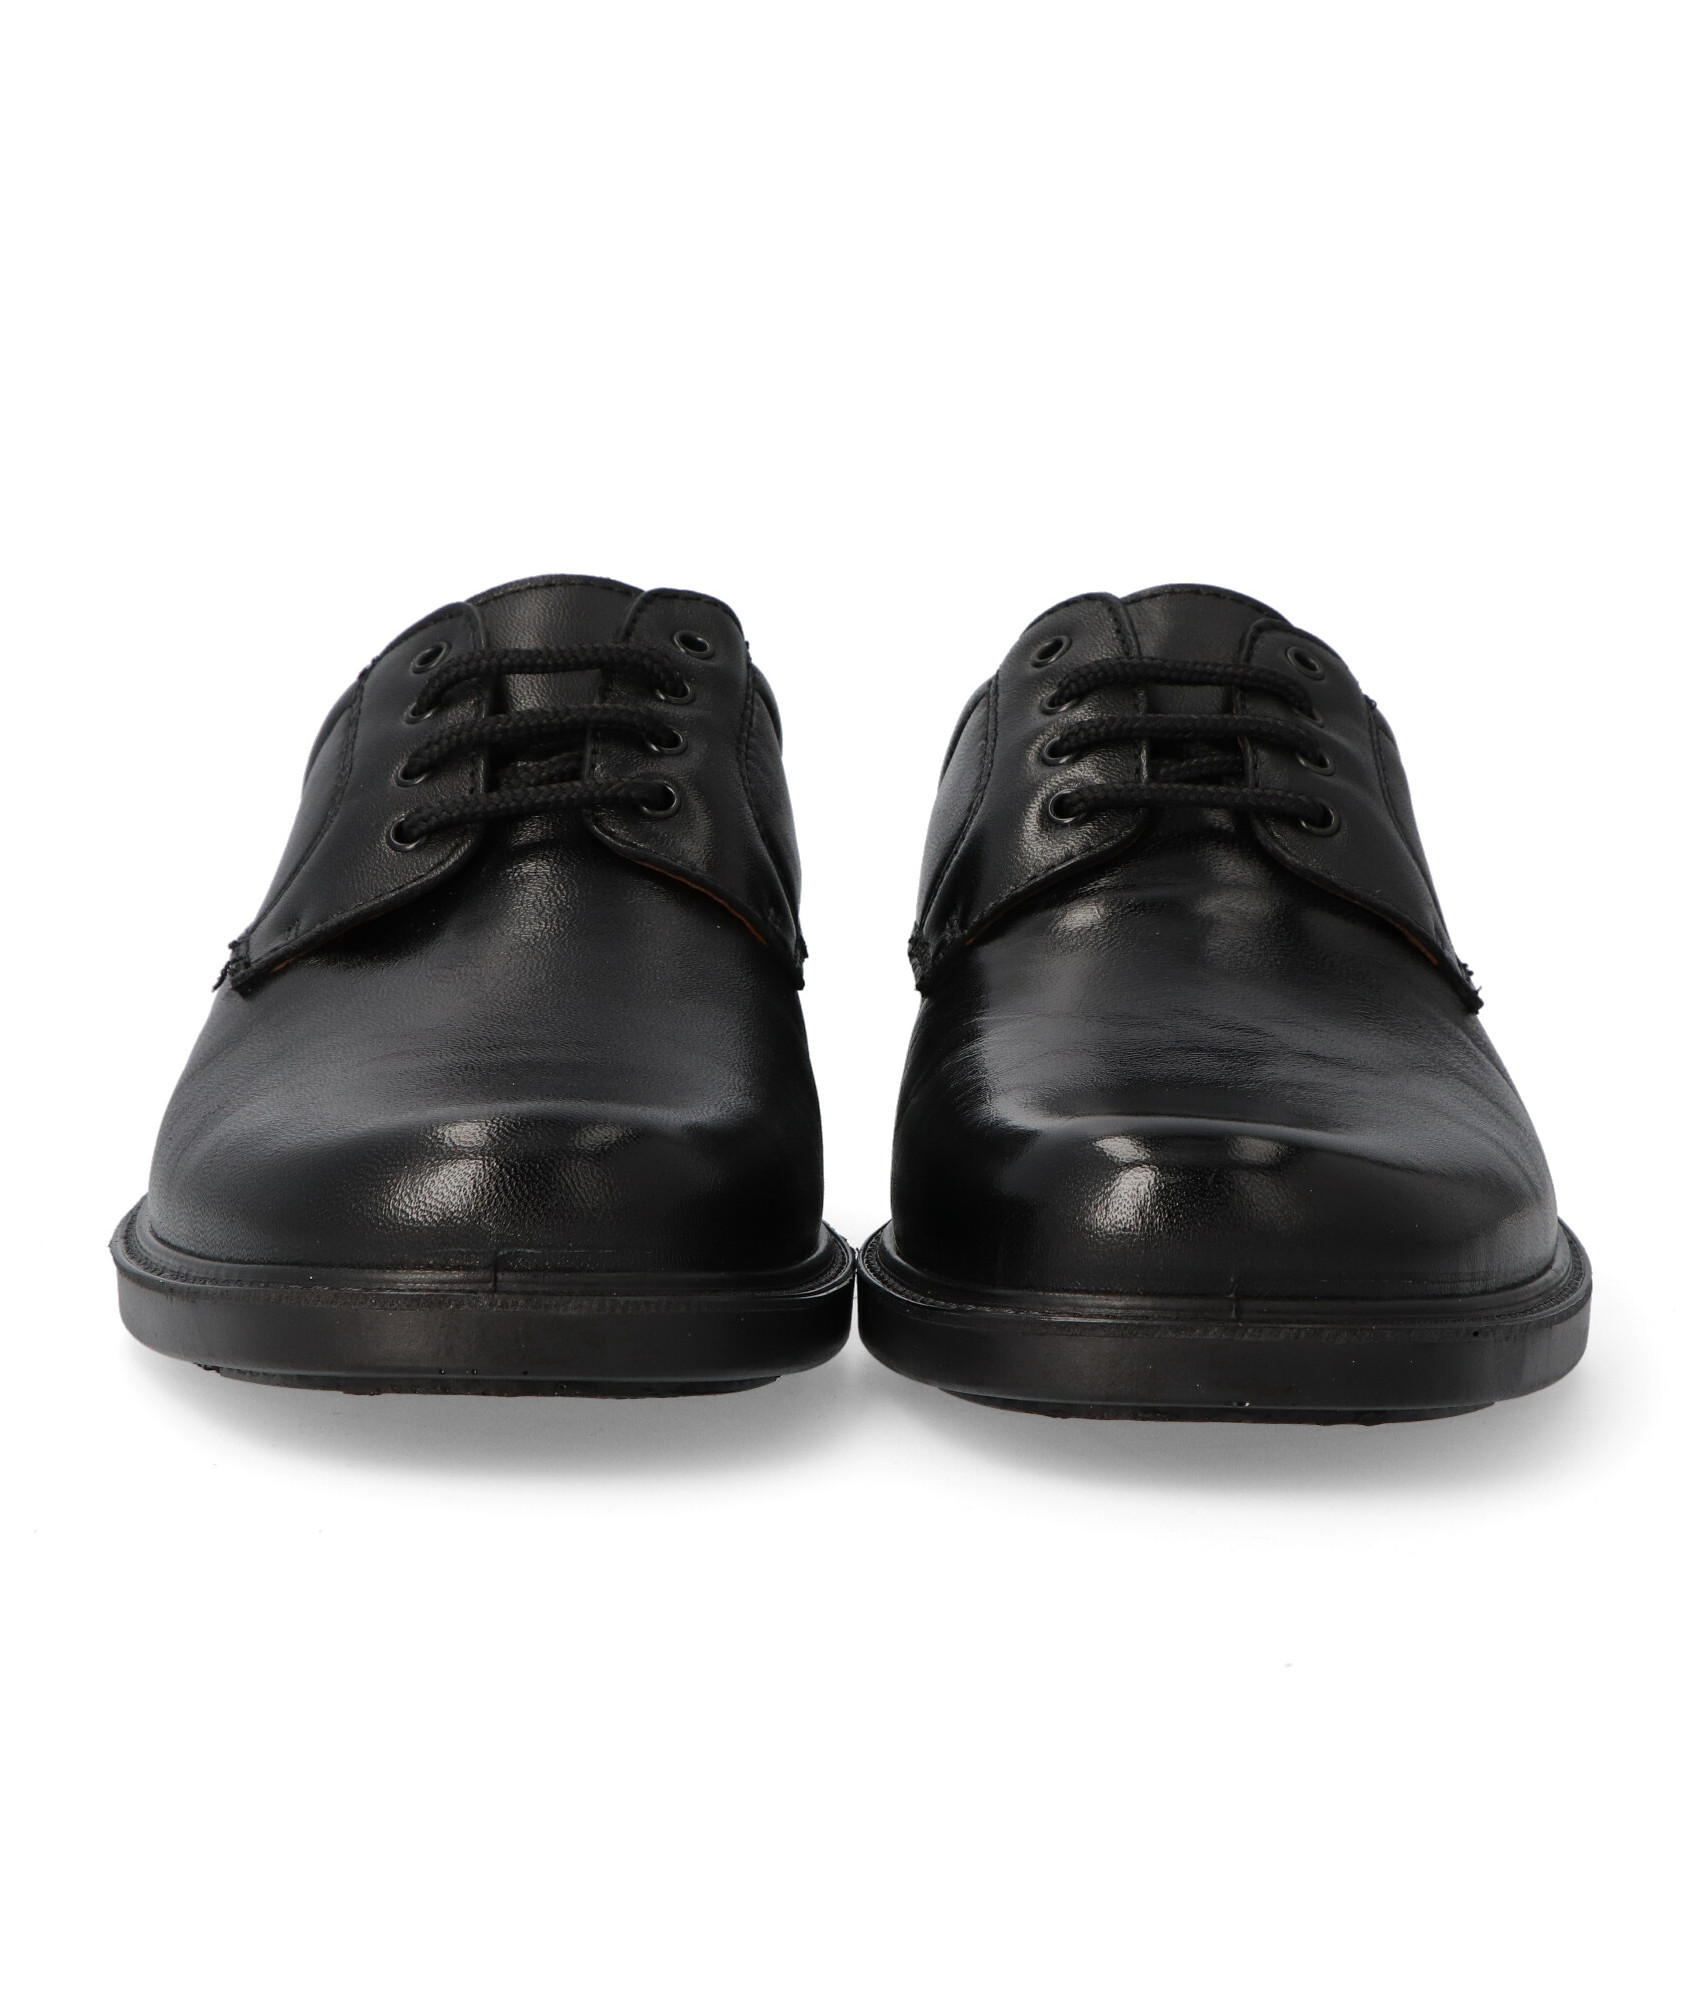 Zapato hombre impermeable cordon elástico piel negro de Lusetti Numero 40 -  Color NEGRO